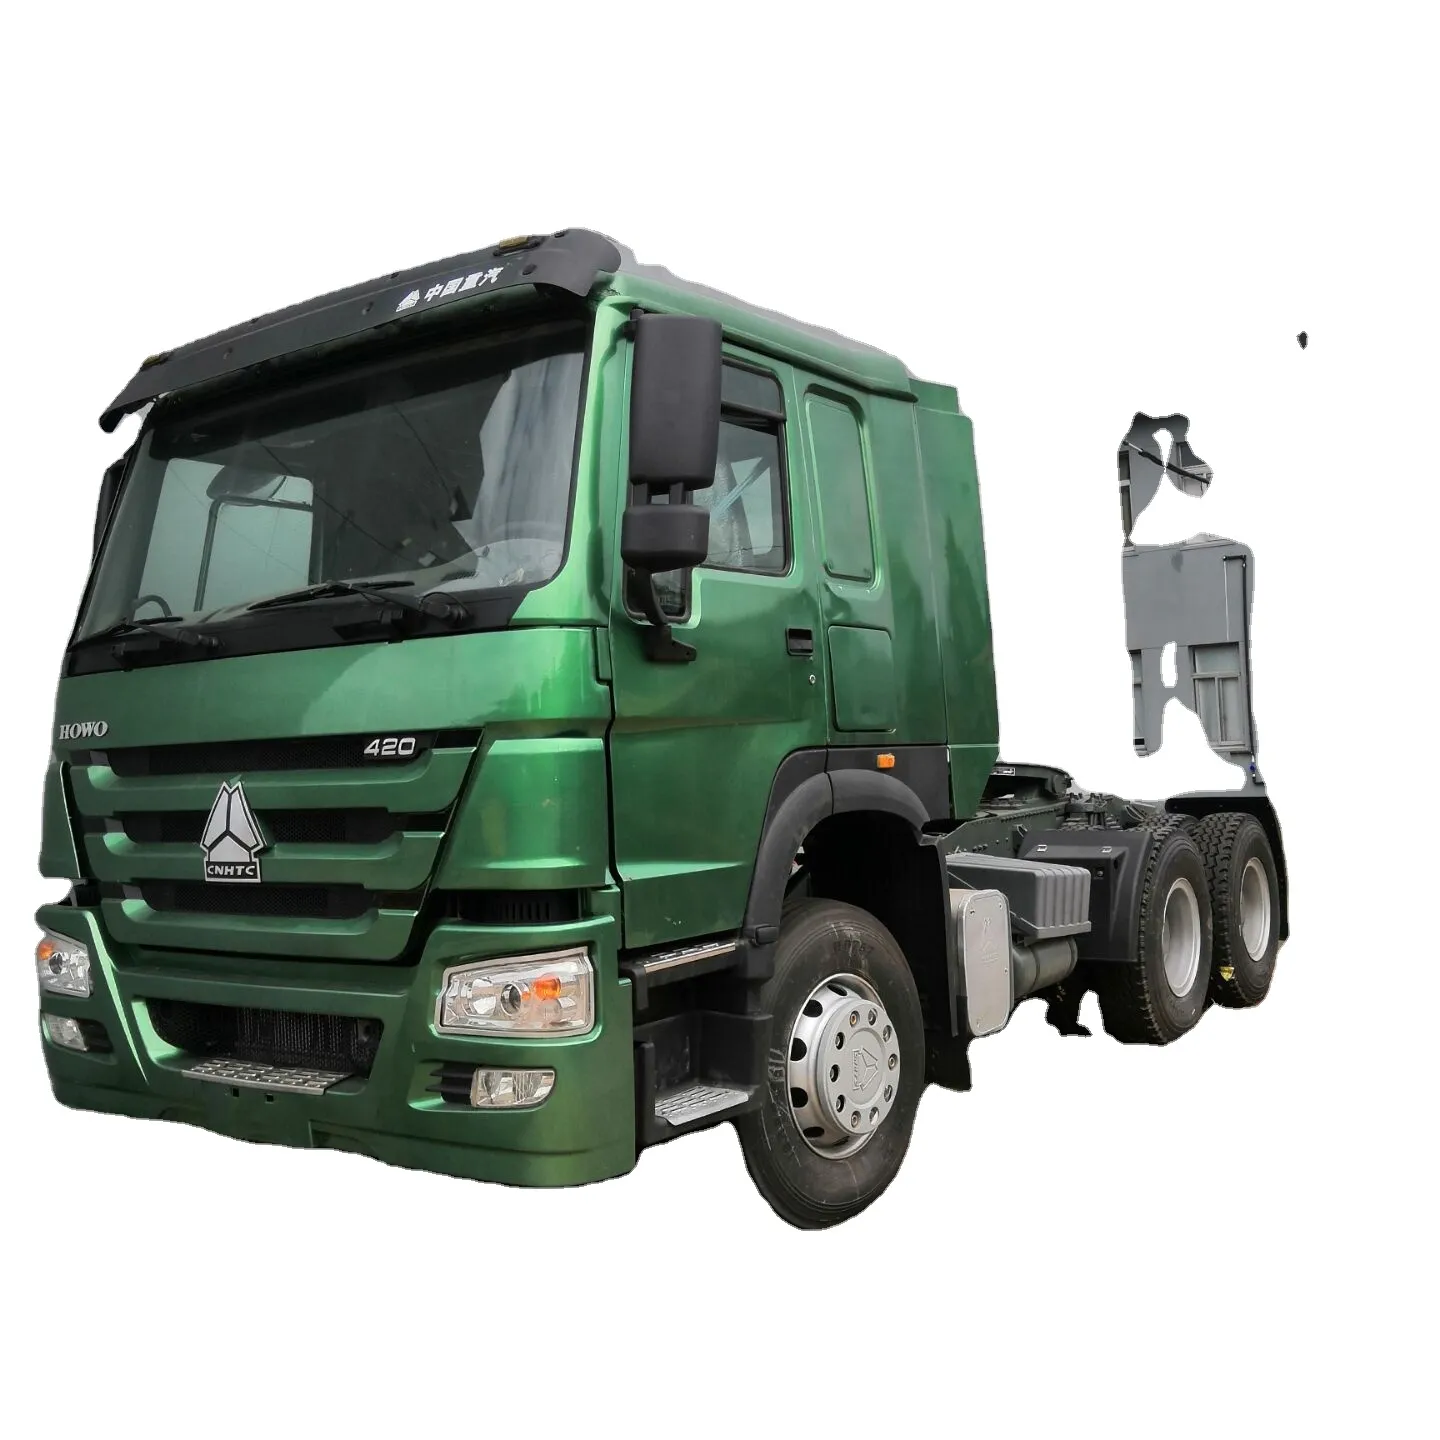 Gebruikt Goedkope Goede Kwaliteit Beste Prijs Howoo 420 375 380 Dump Truck